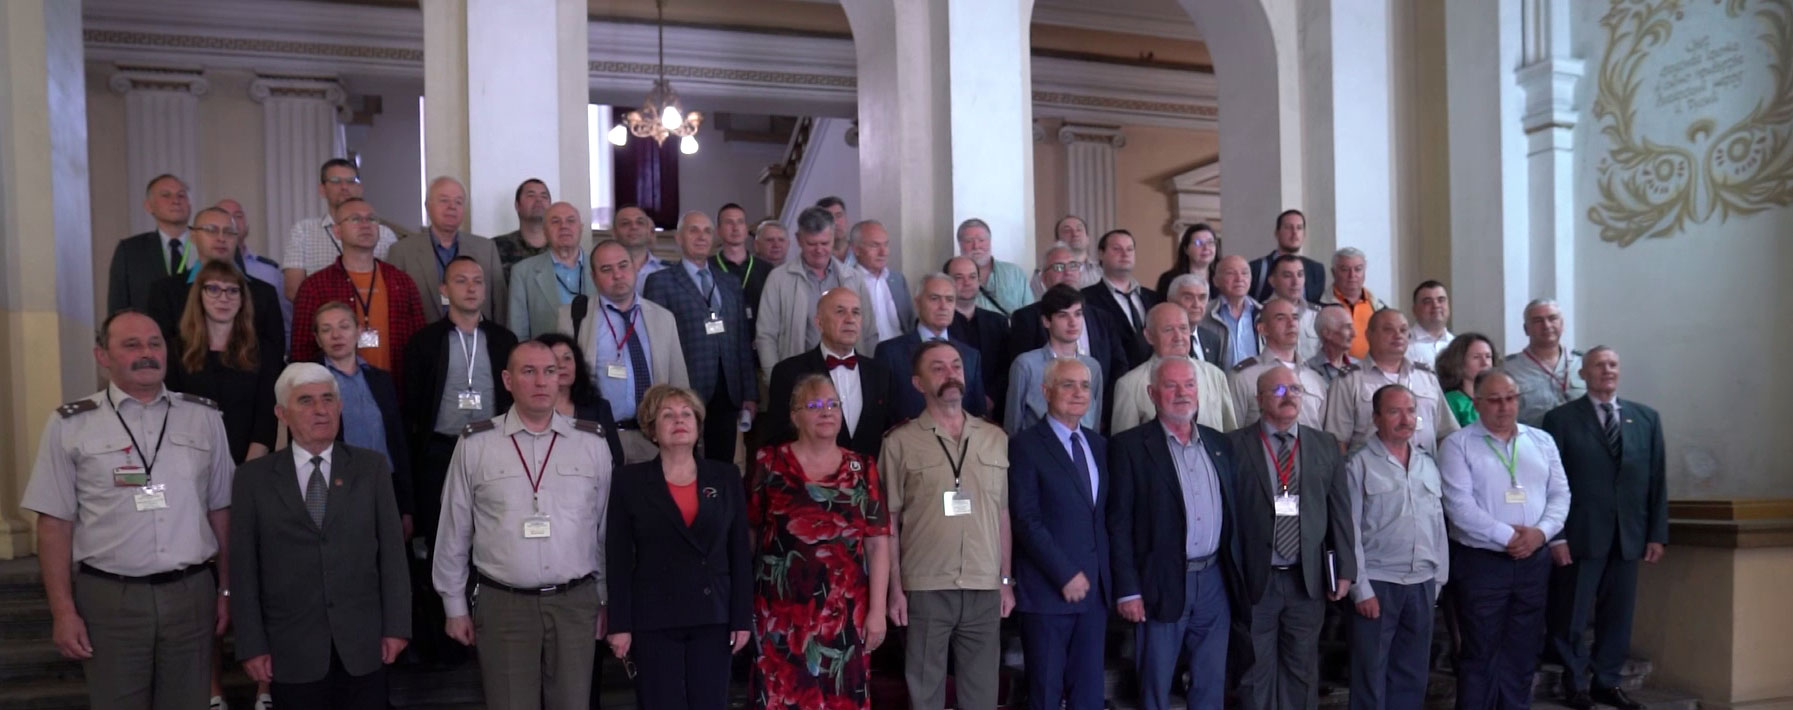 Във Военна академия „Г.С. Раковски“ научна конференция, посветена на Балканските войни